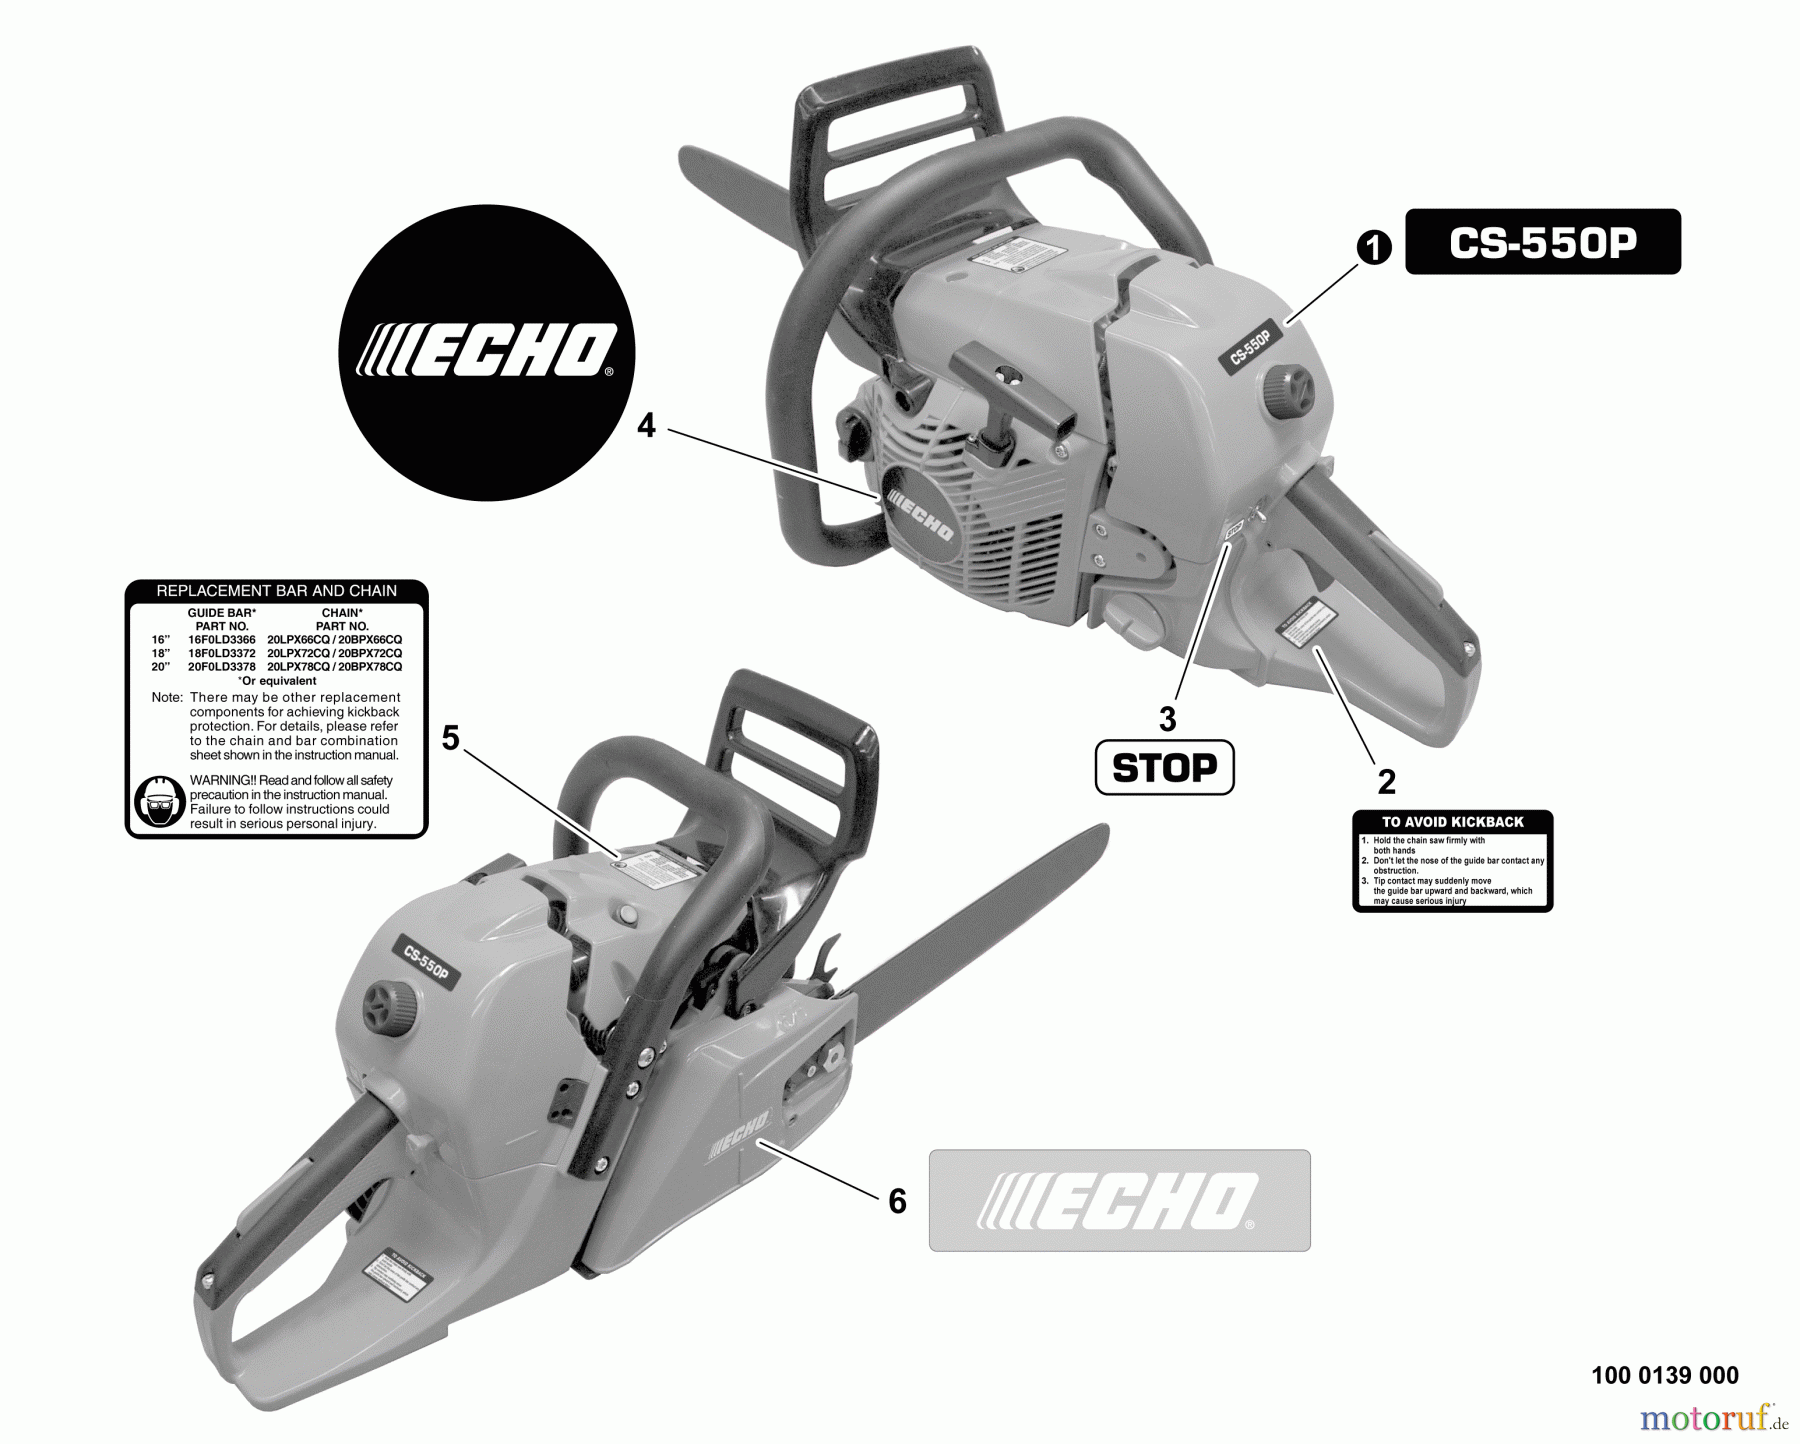  Echo Sägen, Kettensägen CS-550P - Echo Chainsaw, S/N: C10712001001 - C10712999999 Labels